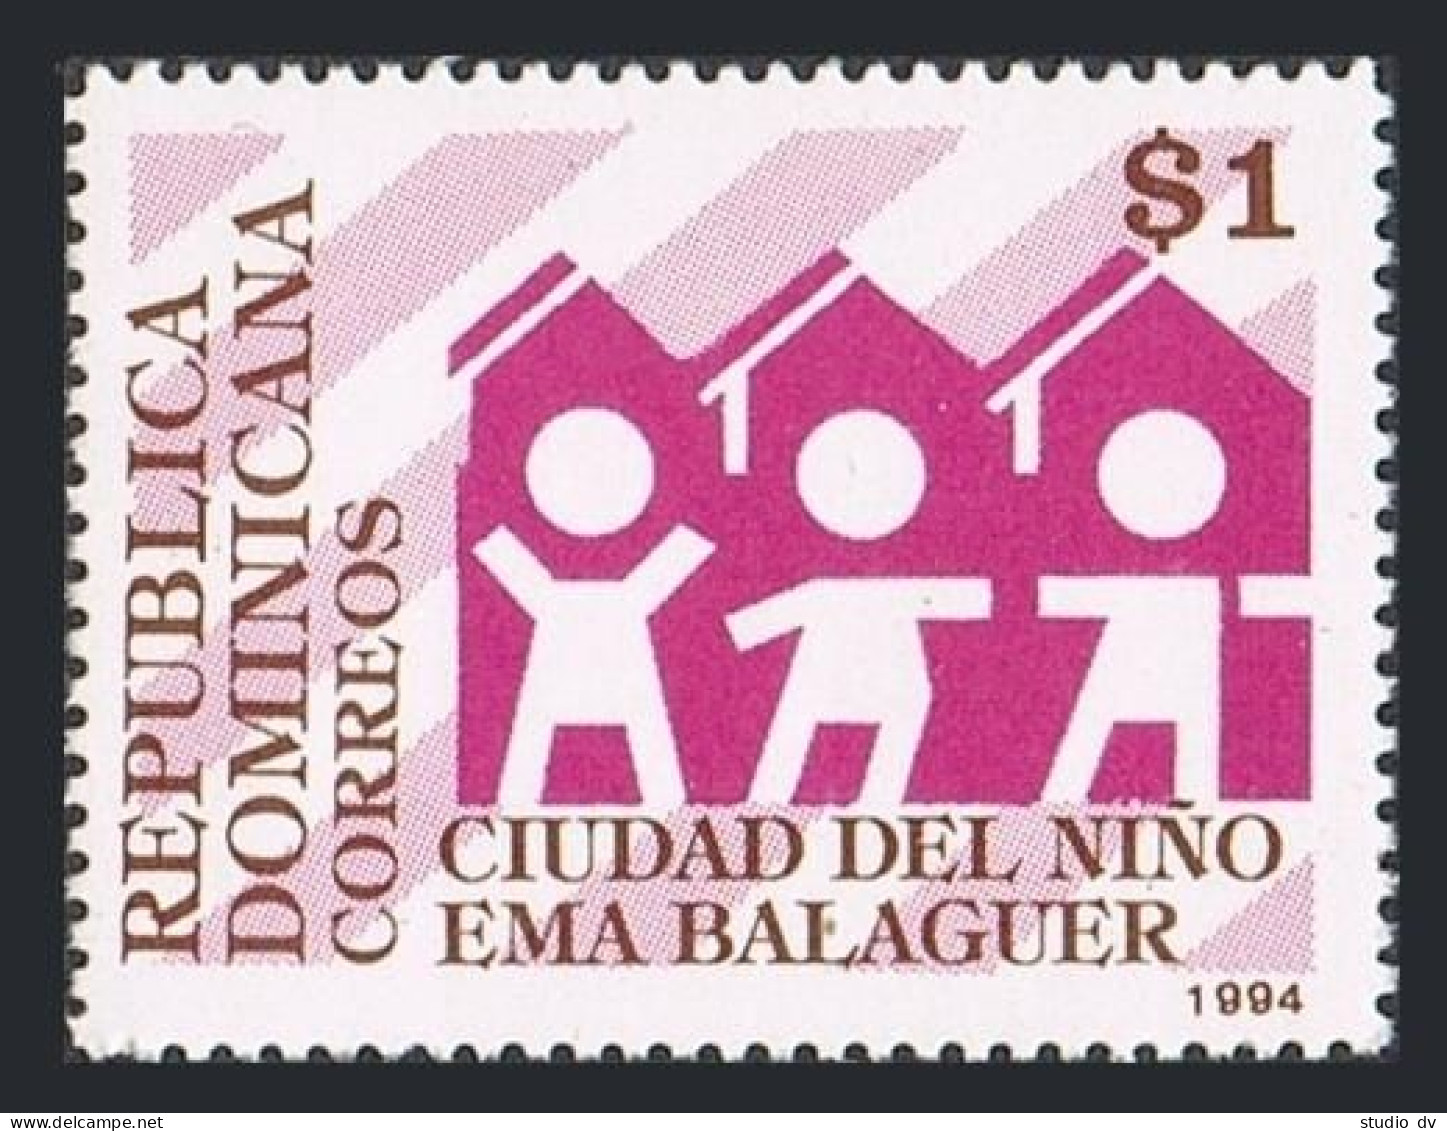 Dominican Rep 1165,MNH.Michel 1708. Ema Balaguer City Of Children,1994. - Dominicaine (République)